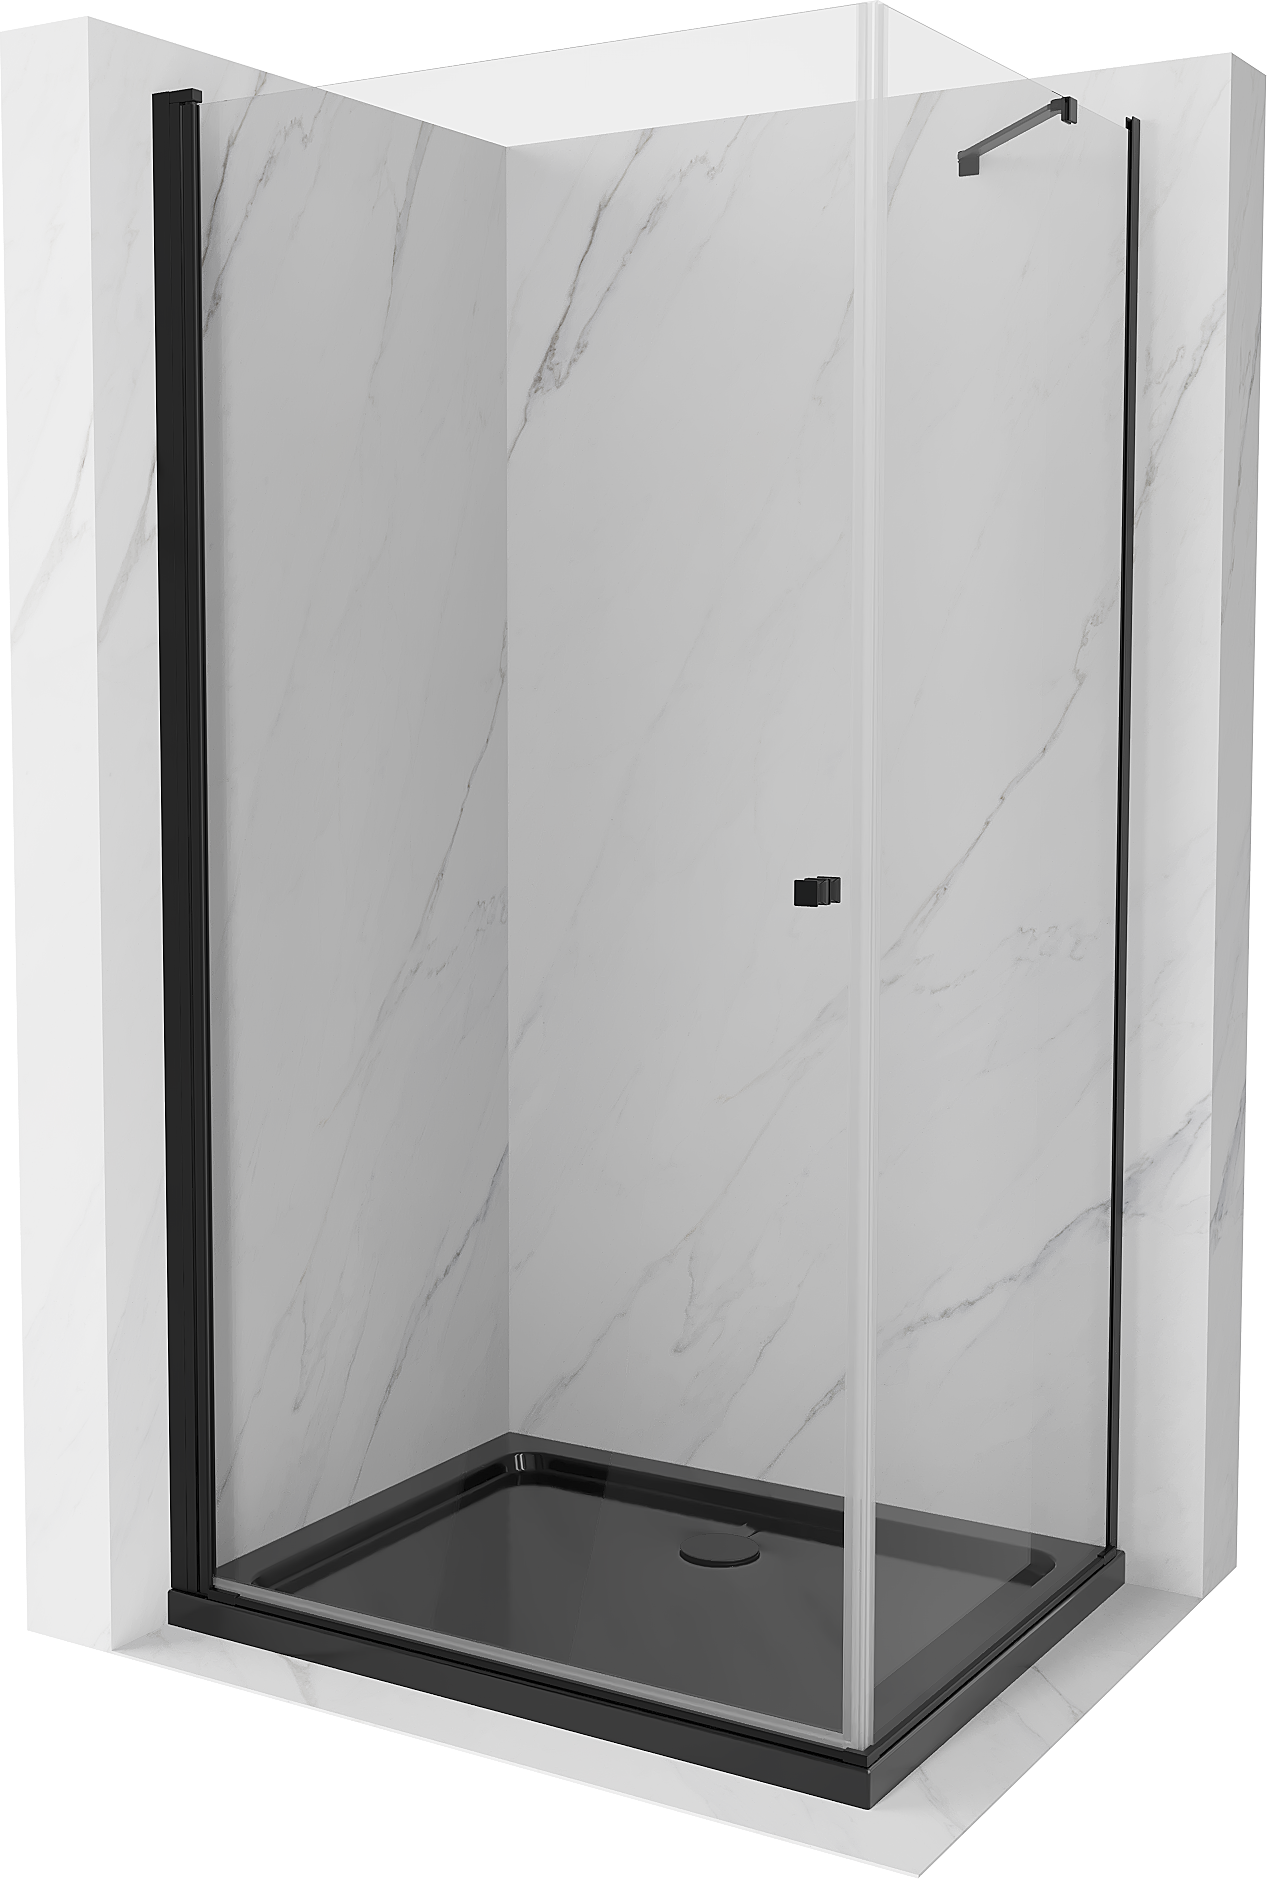 Mexen Pretoria kabina prysznicowa uchylna 70 x 110 cm, transparent, czarna + brodzik Flat, czarny - 852-070-110-70-00-4070B